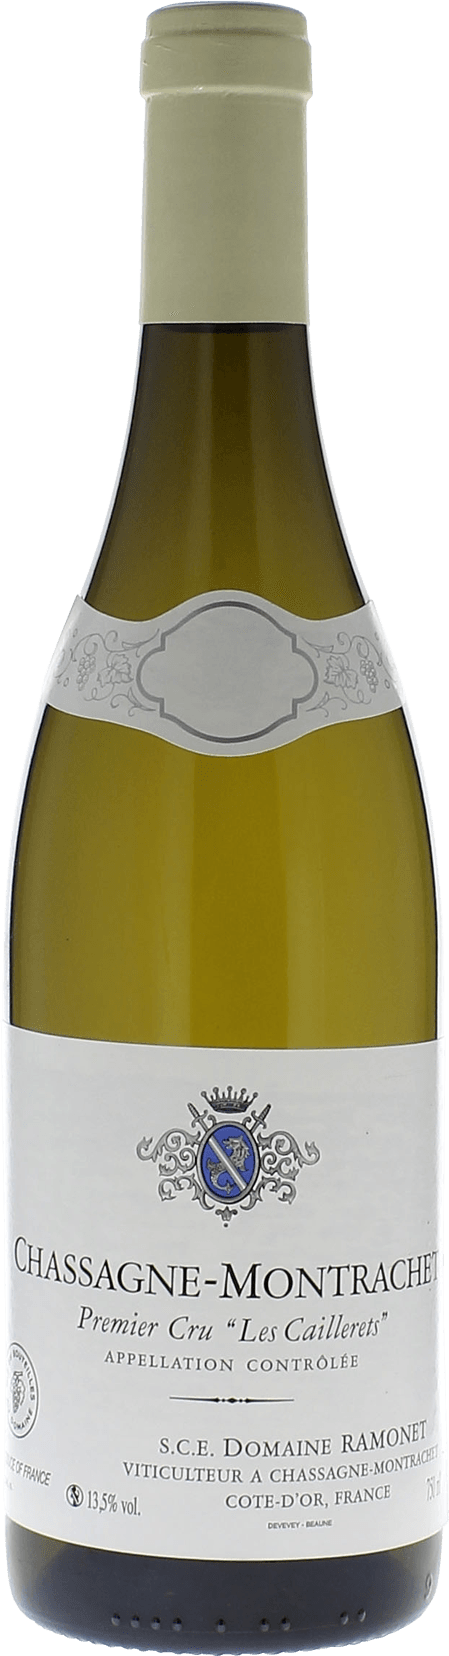 Chassagne montrachet 1er cru clos du caillerets 2016 Domaine RAMONET, Bourgogne blanc